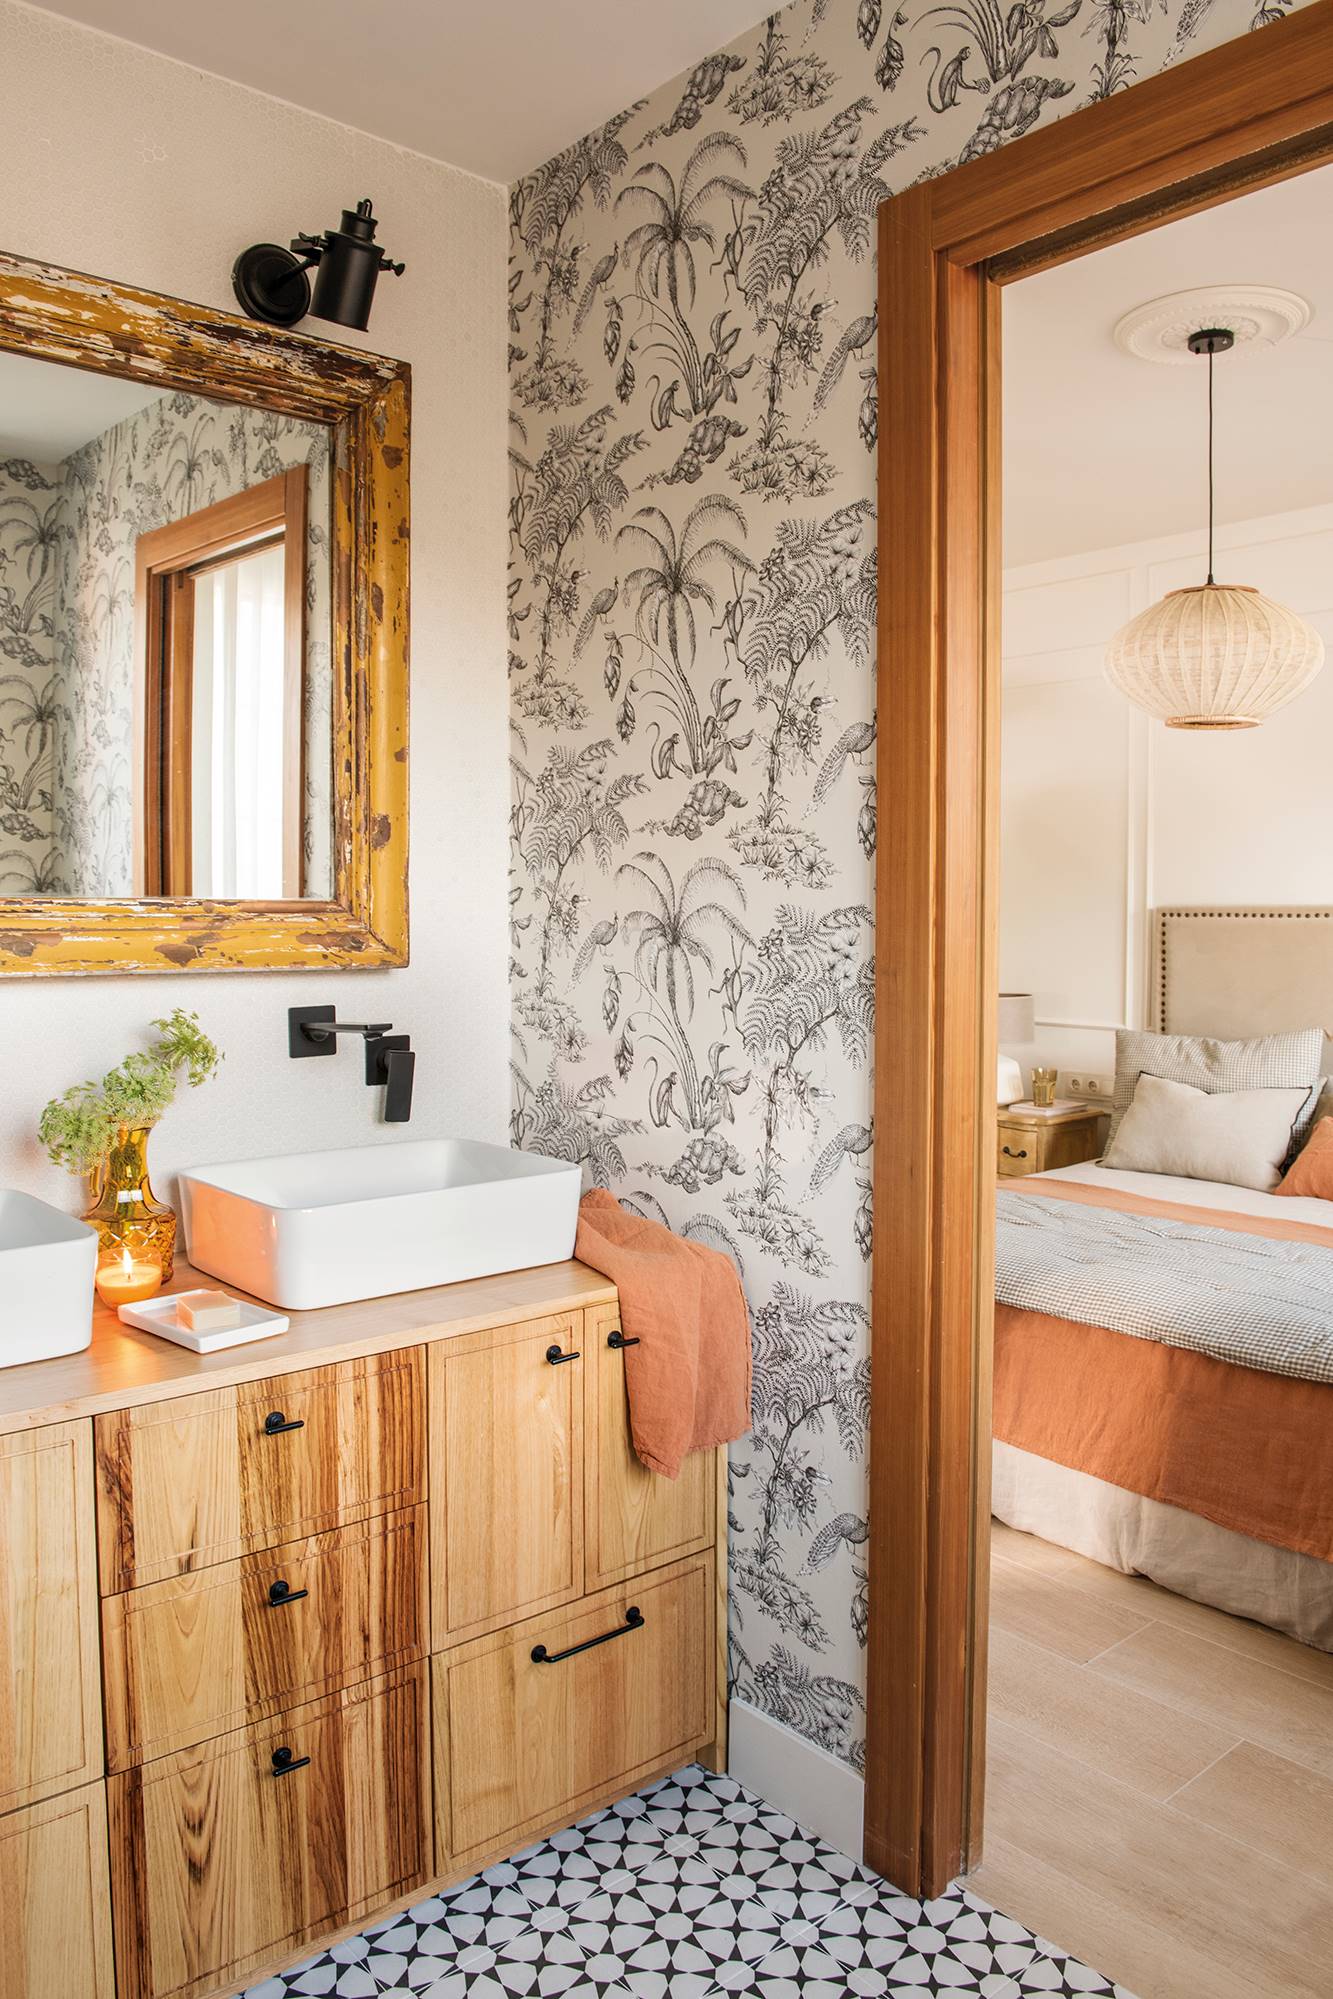 Baño con papel pintado y mueble de lavabo en madera. 